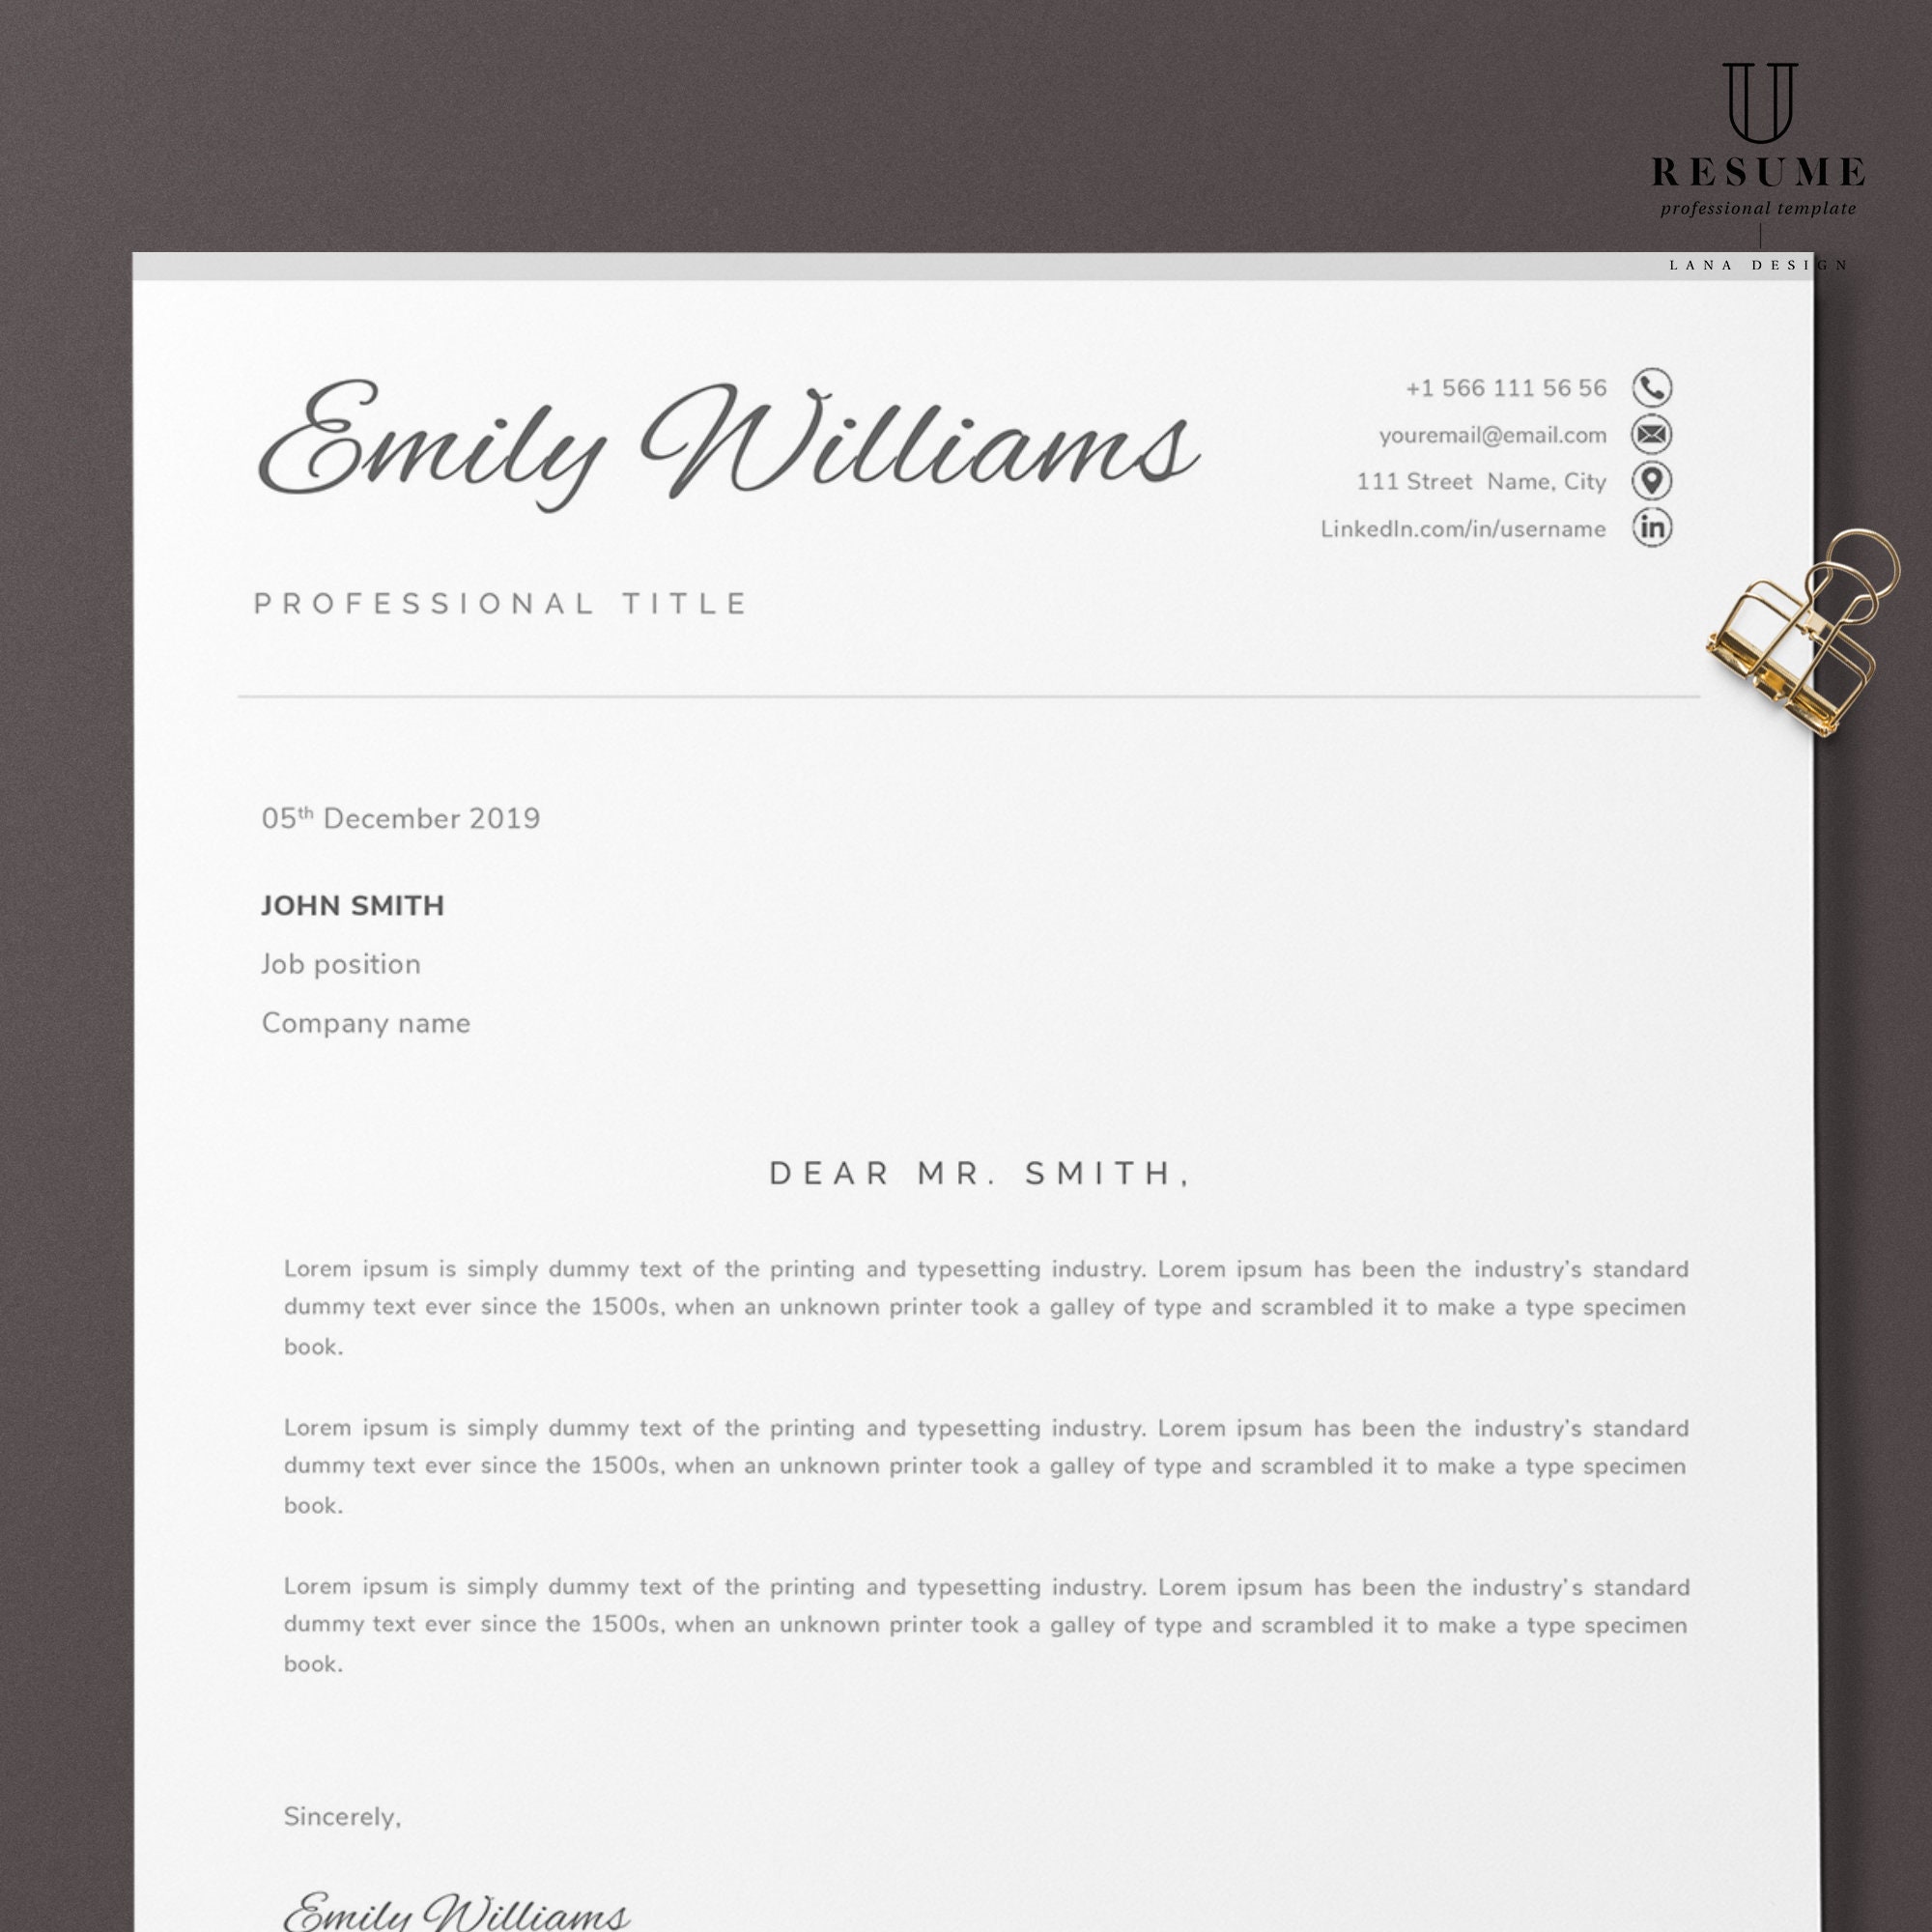 letterhead for cover letter